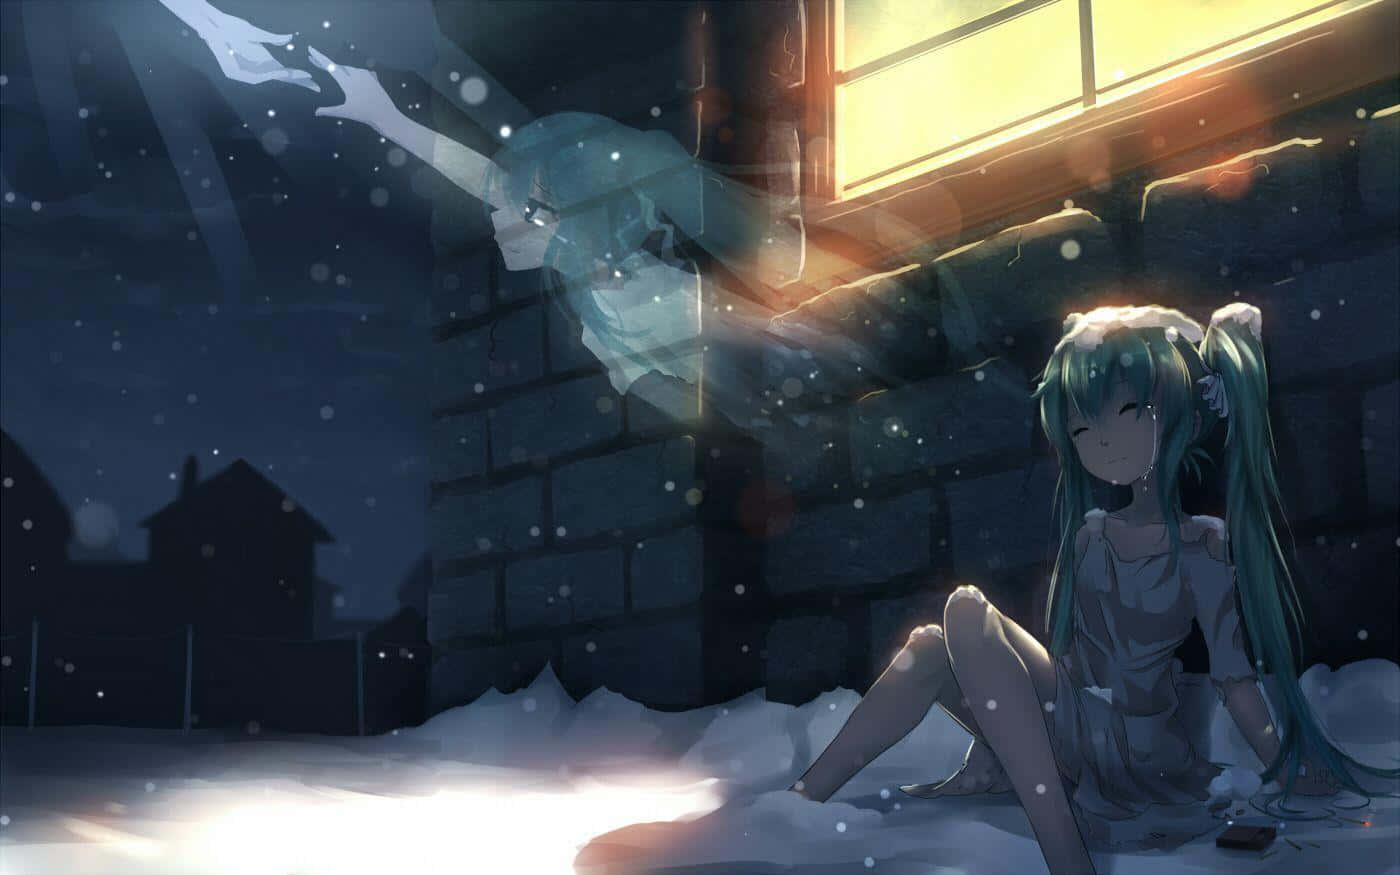 Unfotogramma Dell'incredibilmente Popolare Anime Che Rappresenta Le Difficili Emozioni Della Depressione. Sfondo